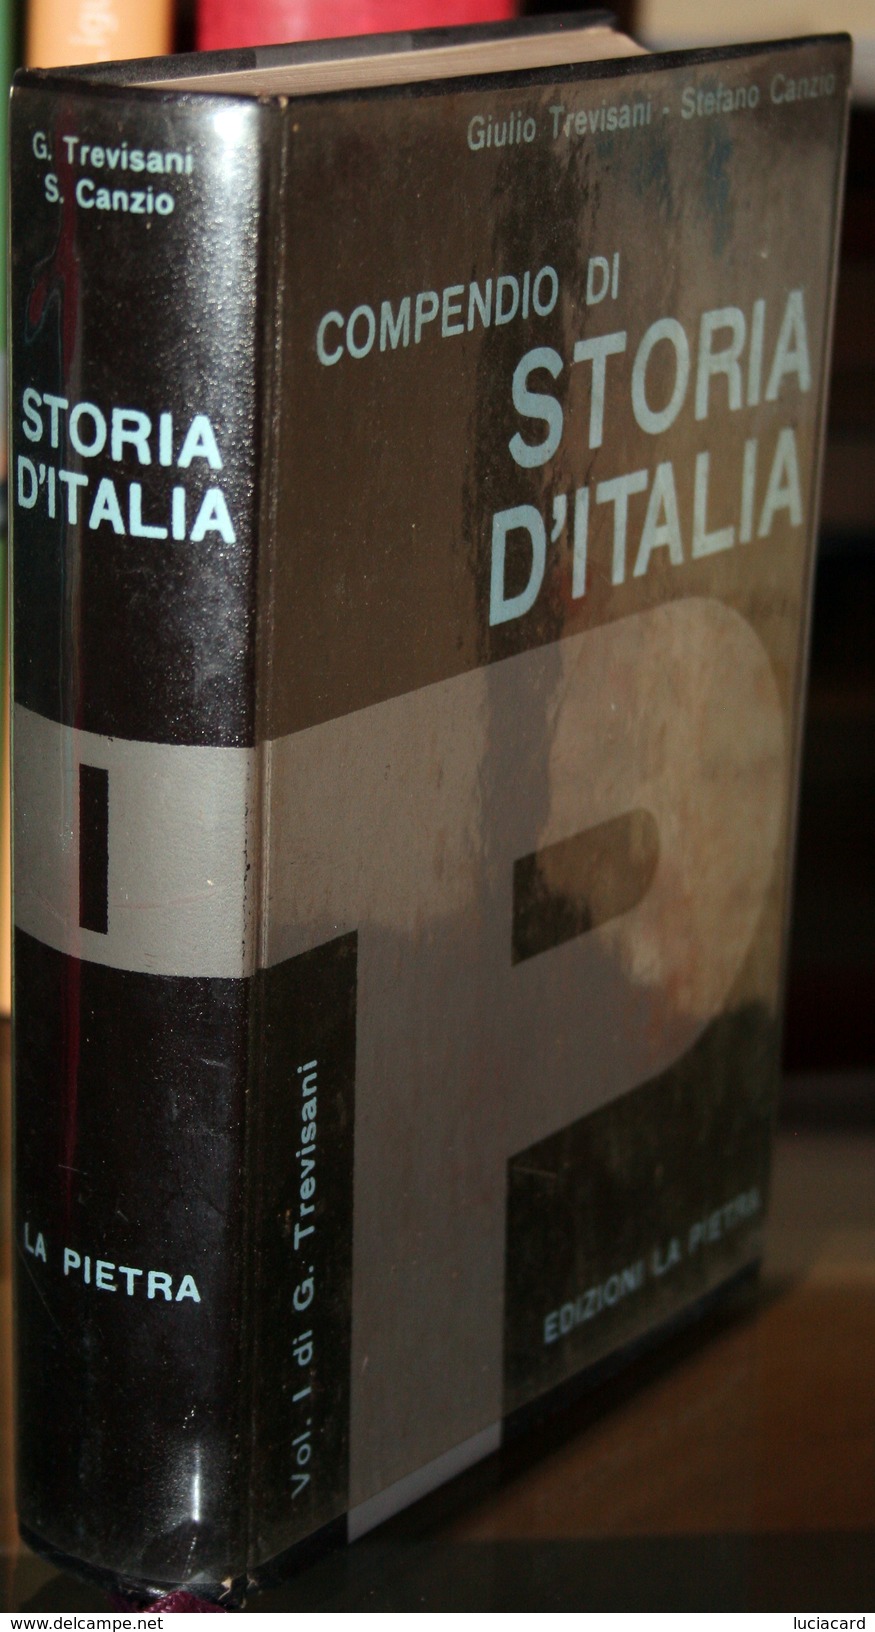 LIBRO -COMPENDIO DI STORIA D'ITALIA -VOLUME 1 DI G. TREVISANI -EDIZIONI LA PIETRA - Histoire